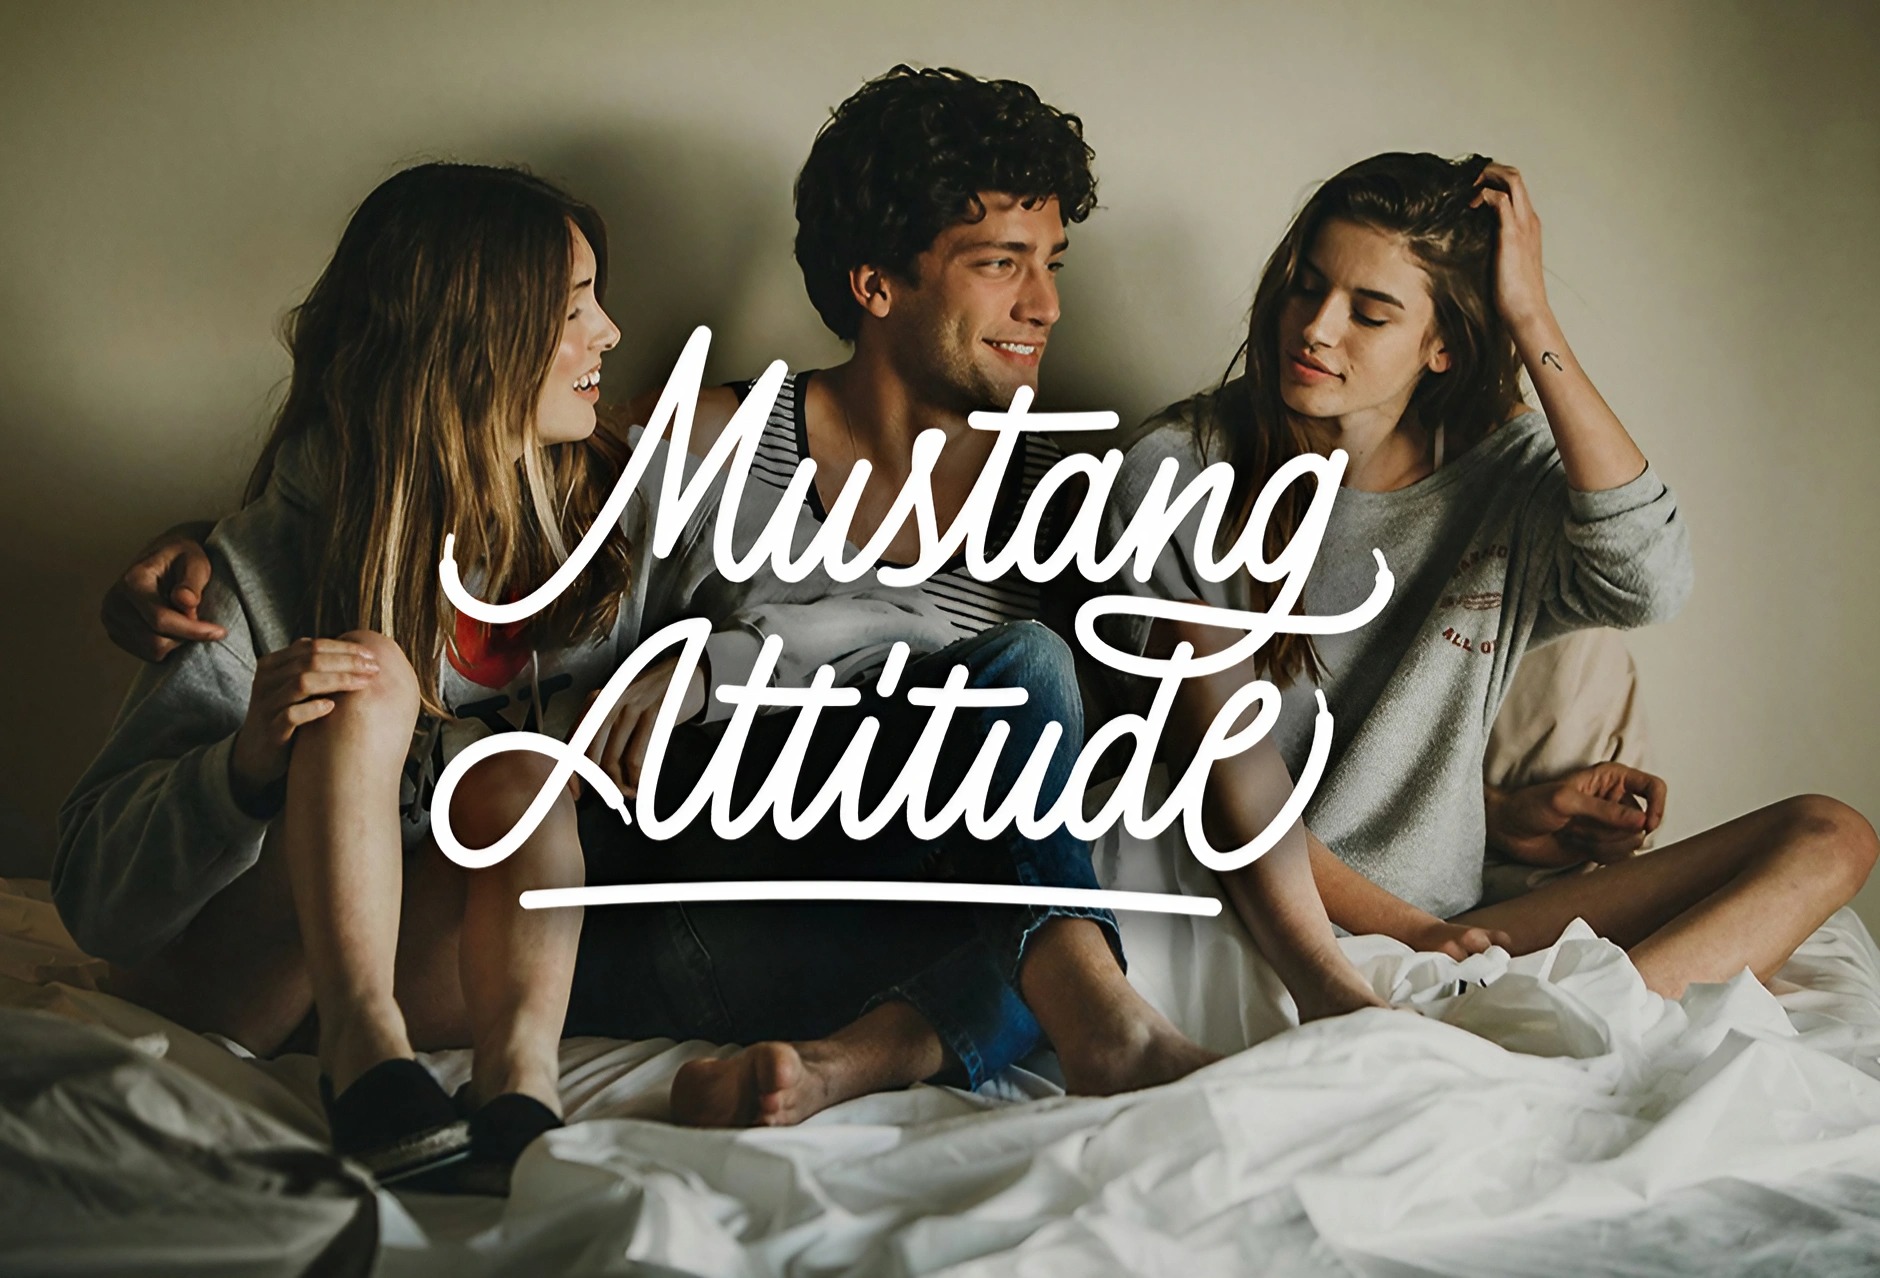 Mustang Attitude campaña 2015 - Imagen corporativa para calzados Mustang - Diseño de lettering - Estudio de diseño gráfico Valencia Pixelarte